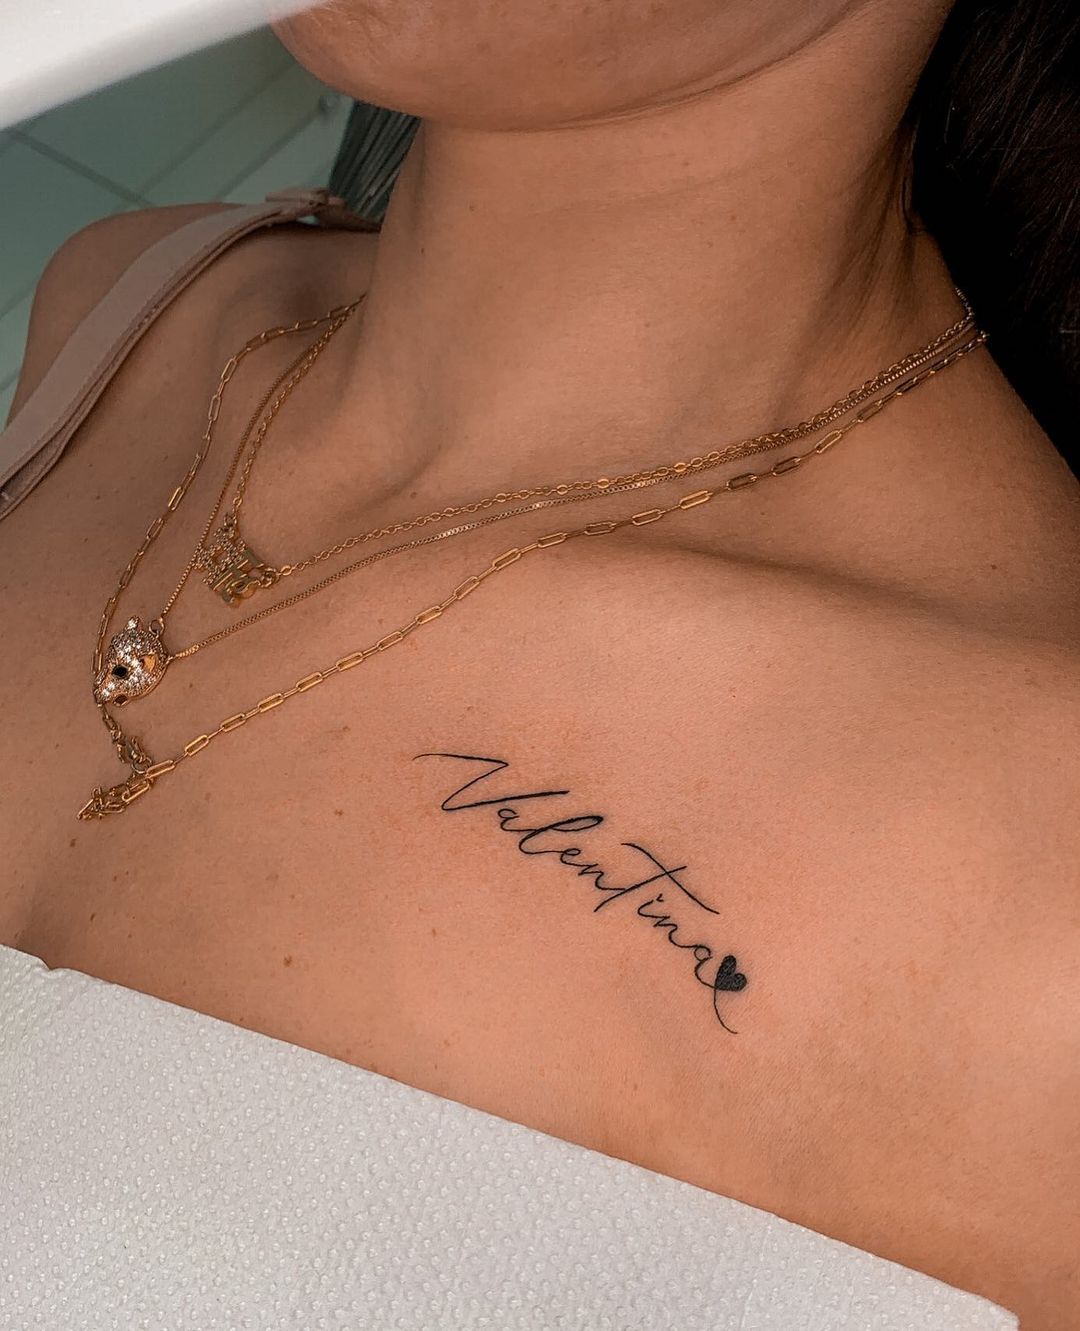 chest snake tattoo #keshtattoo #keshtattoostudio #keshtattoobhutan #ke... |  TikTok